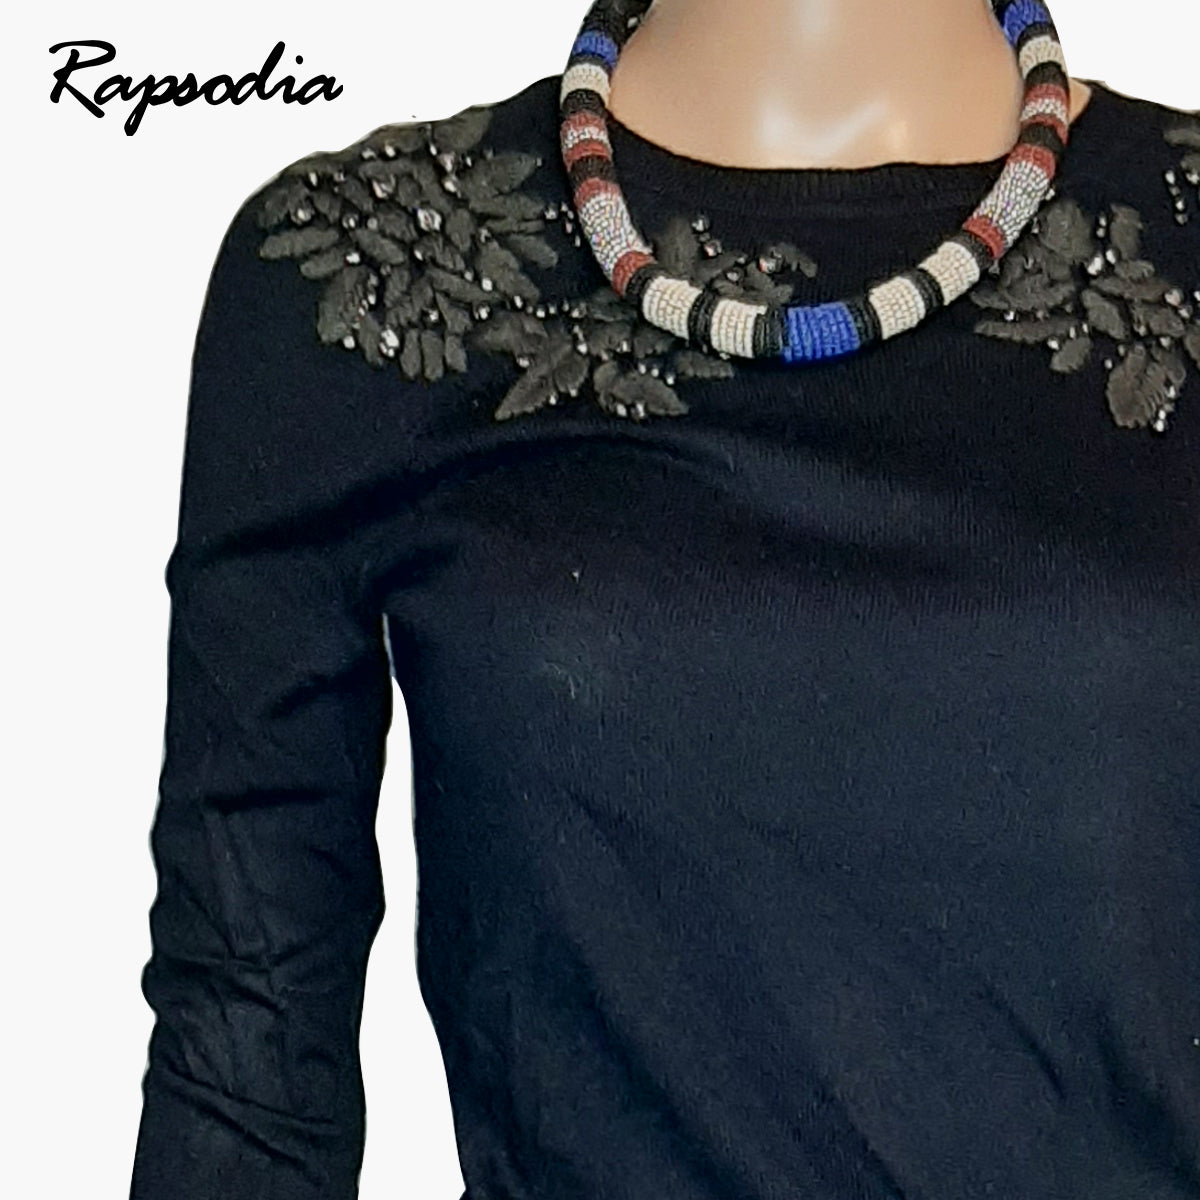 Sweater Rapsodia Flo Negro